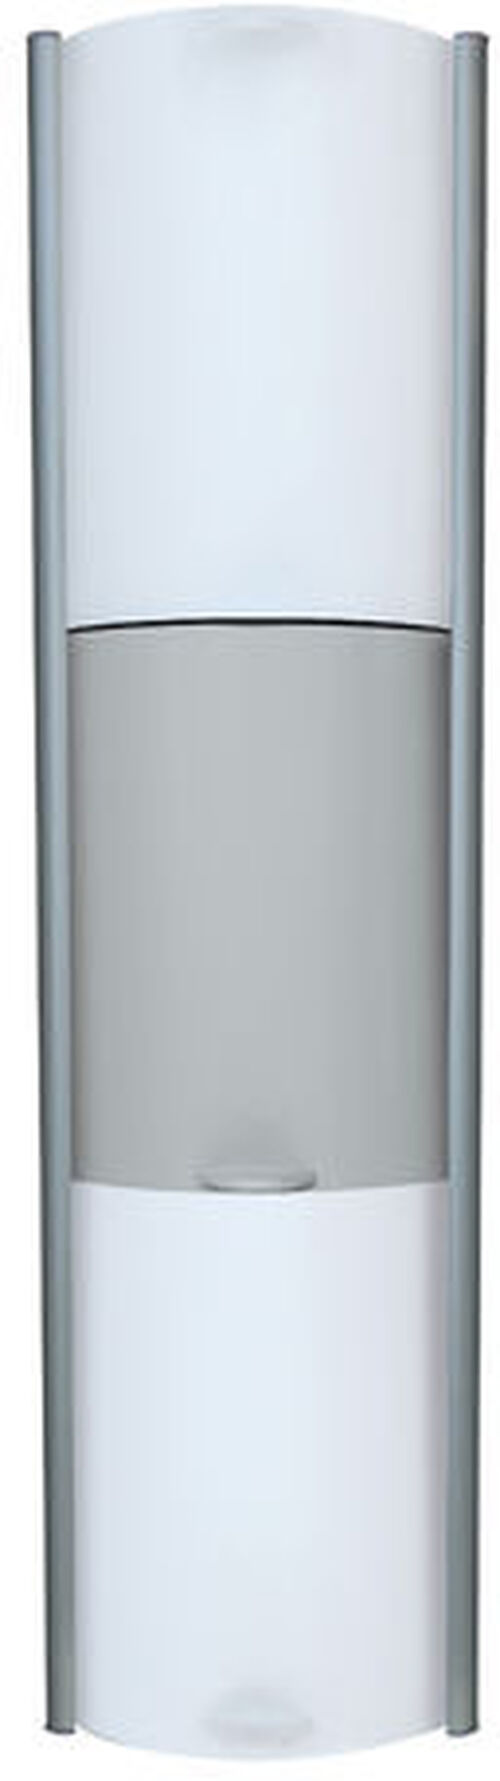 Duschenablage Duscholux Showerbox silber hochglanzeloxiert weiss-grau